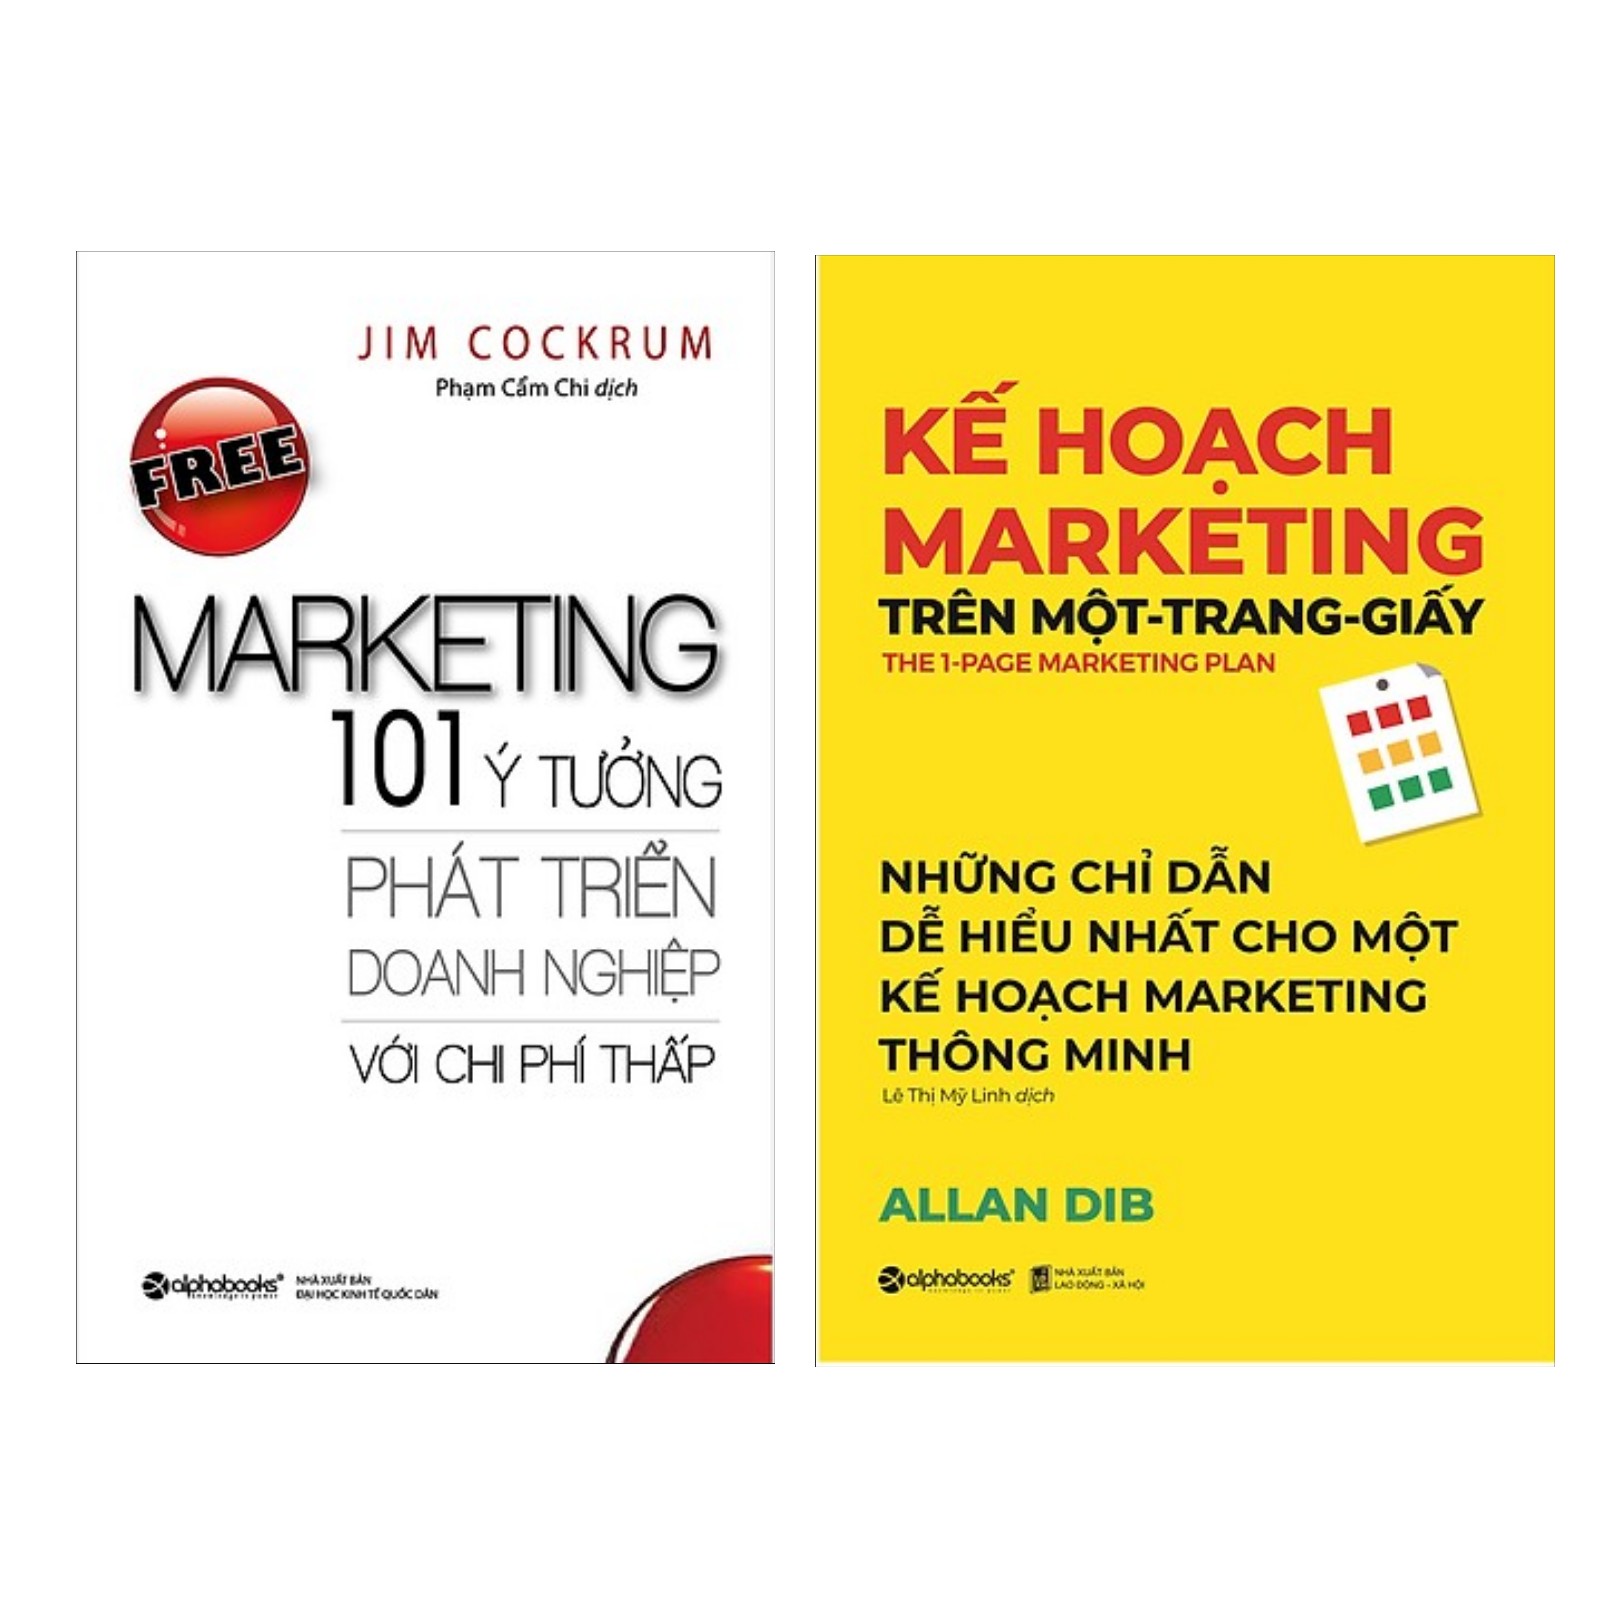 Combo 2 Cuốn Sách Về Marketing - Bán Hàng: Free Marketing – 101 Ý Tưởng Phát Triển Doanh Nghiệp Với Chi Phí Thấp + Kế Hoạch Marketing Trên Một - Trang - Giấy